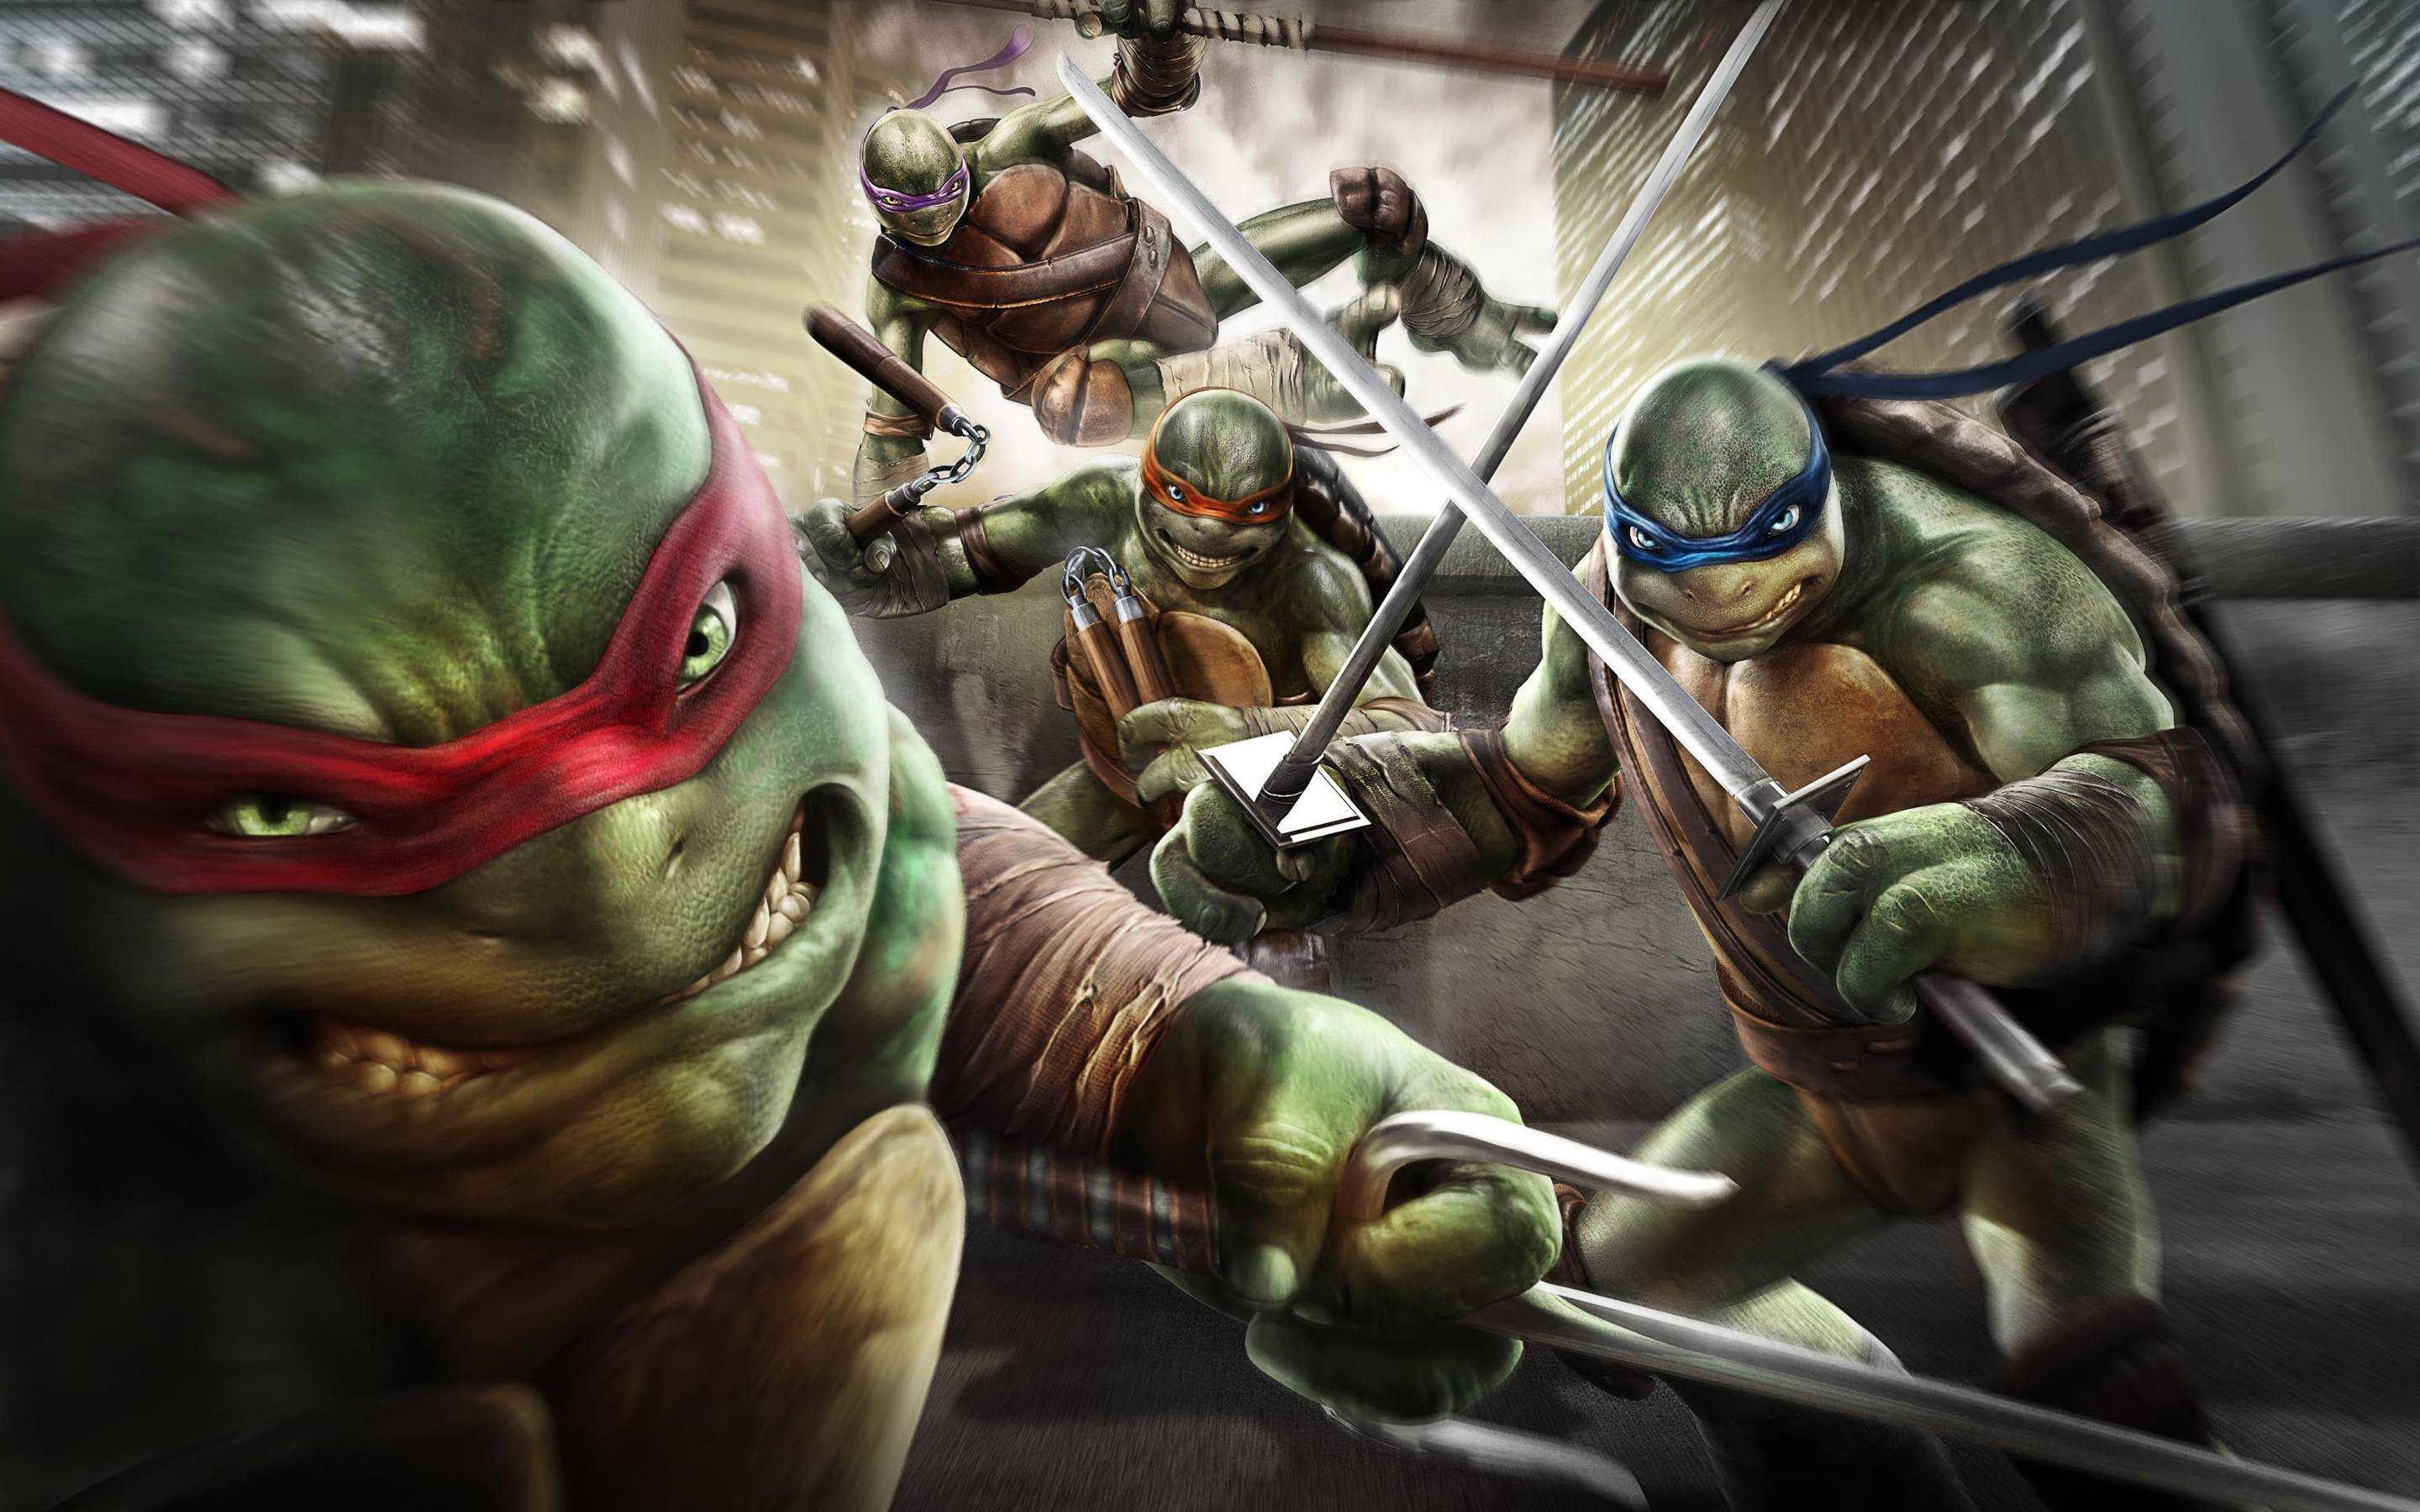 Chào mừng bạn đến với thế giới thú vị của Ninja Turtles! Họ sẽ đưa bạn vào một cuộc phiêu lưu đầy thách thức và hành động. Những tình tiết hấp dẫn trong hình ảnh của họ chắc chắn sẽ khiến bạn một mạch theo dõi cho đến tận cùng.